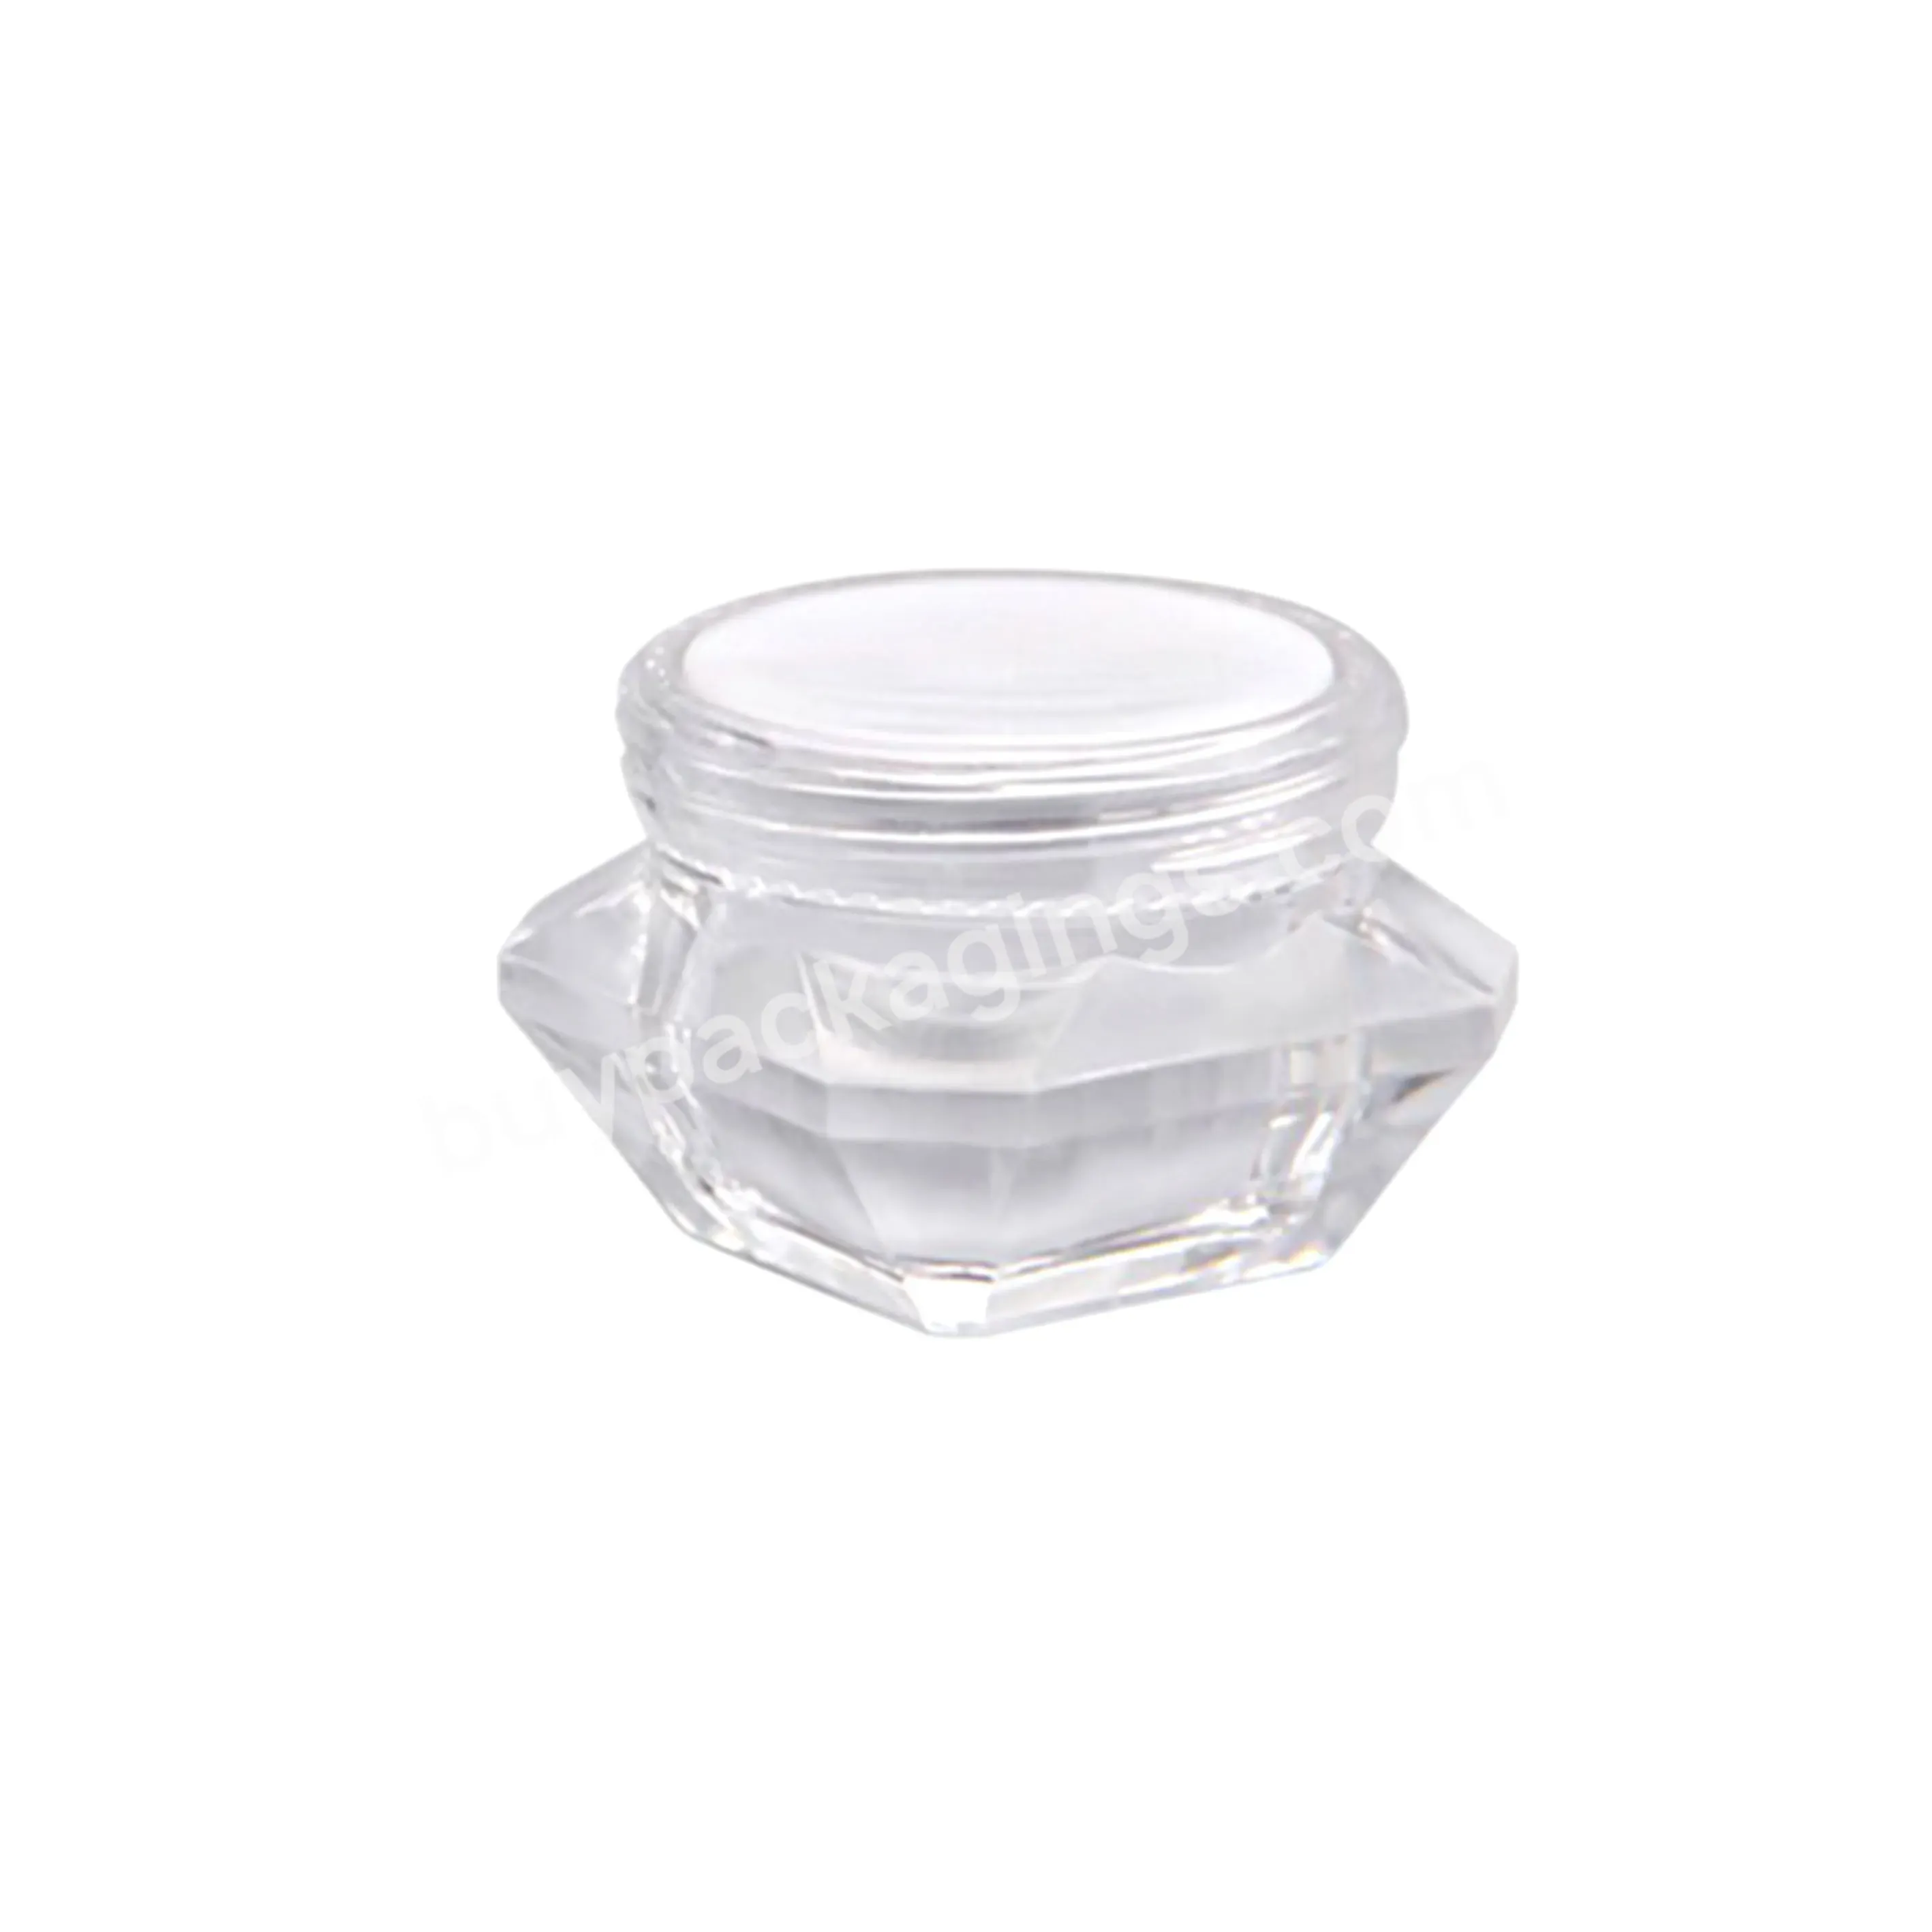 Plastic Cream Jar Container Diamond Shape Empty Plastic Cosmetic Jars 5g 10g 20g 30g - Buy Plastic Cream Jar Container,Empty Plastic Cosmetic Jars 5g 10g 20g 30g,Plastic Cream Jar.